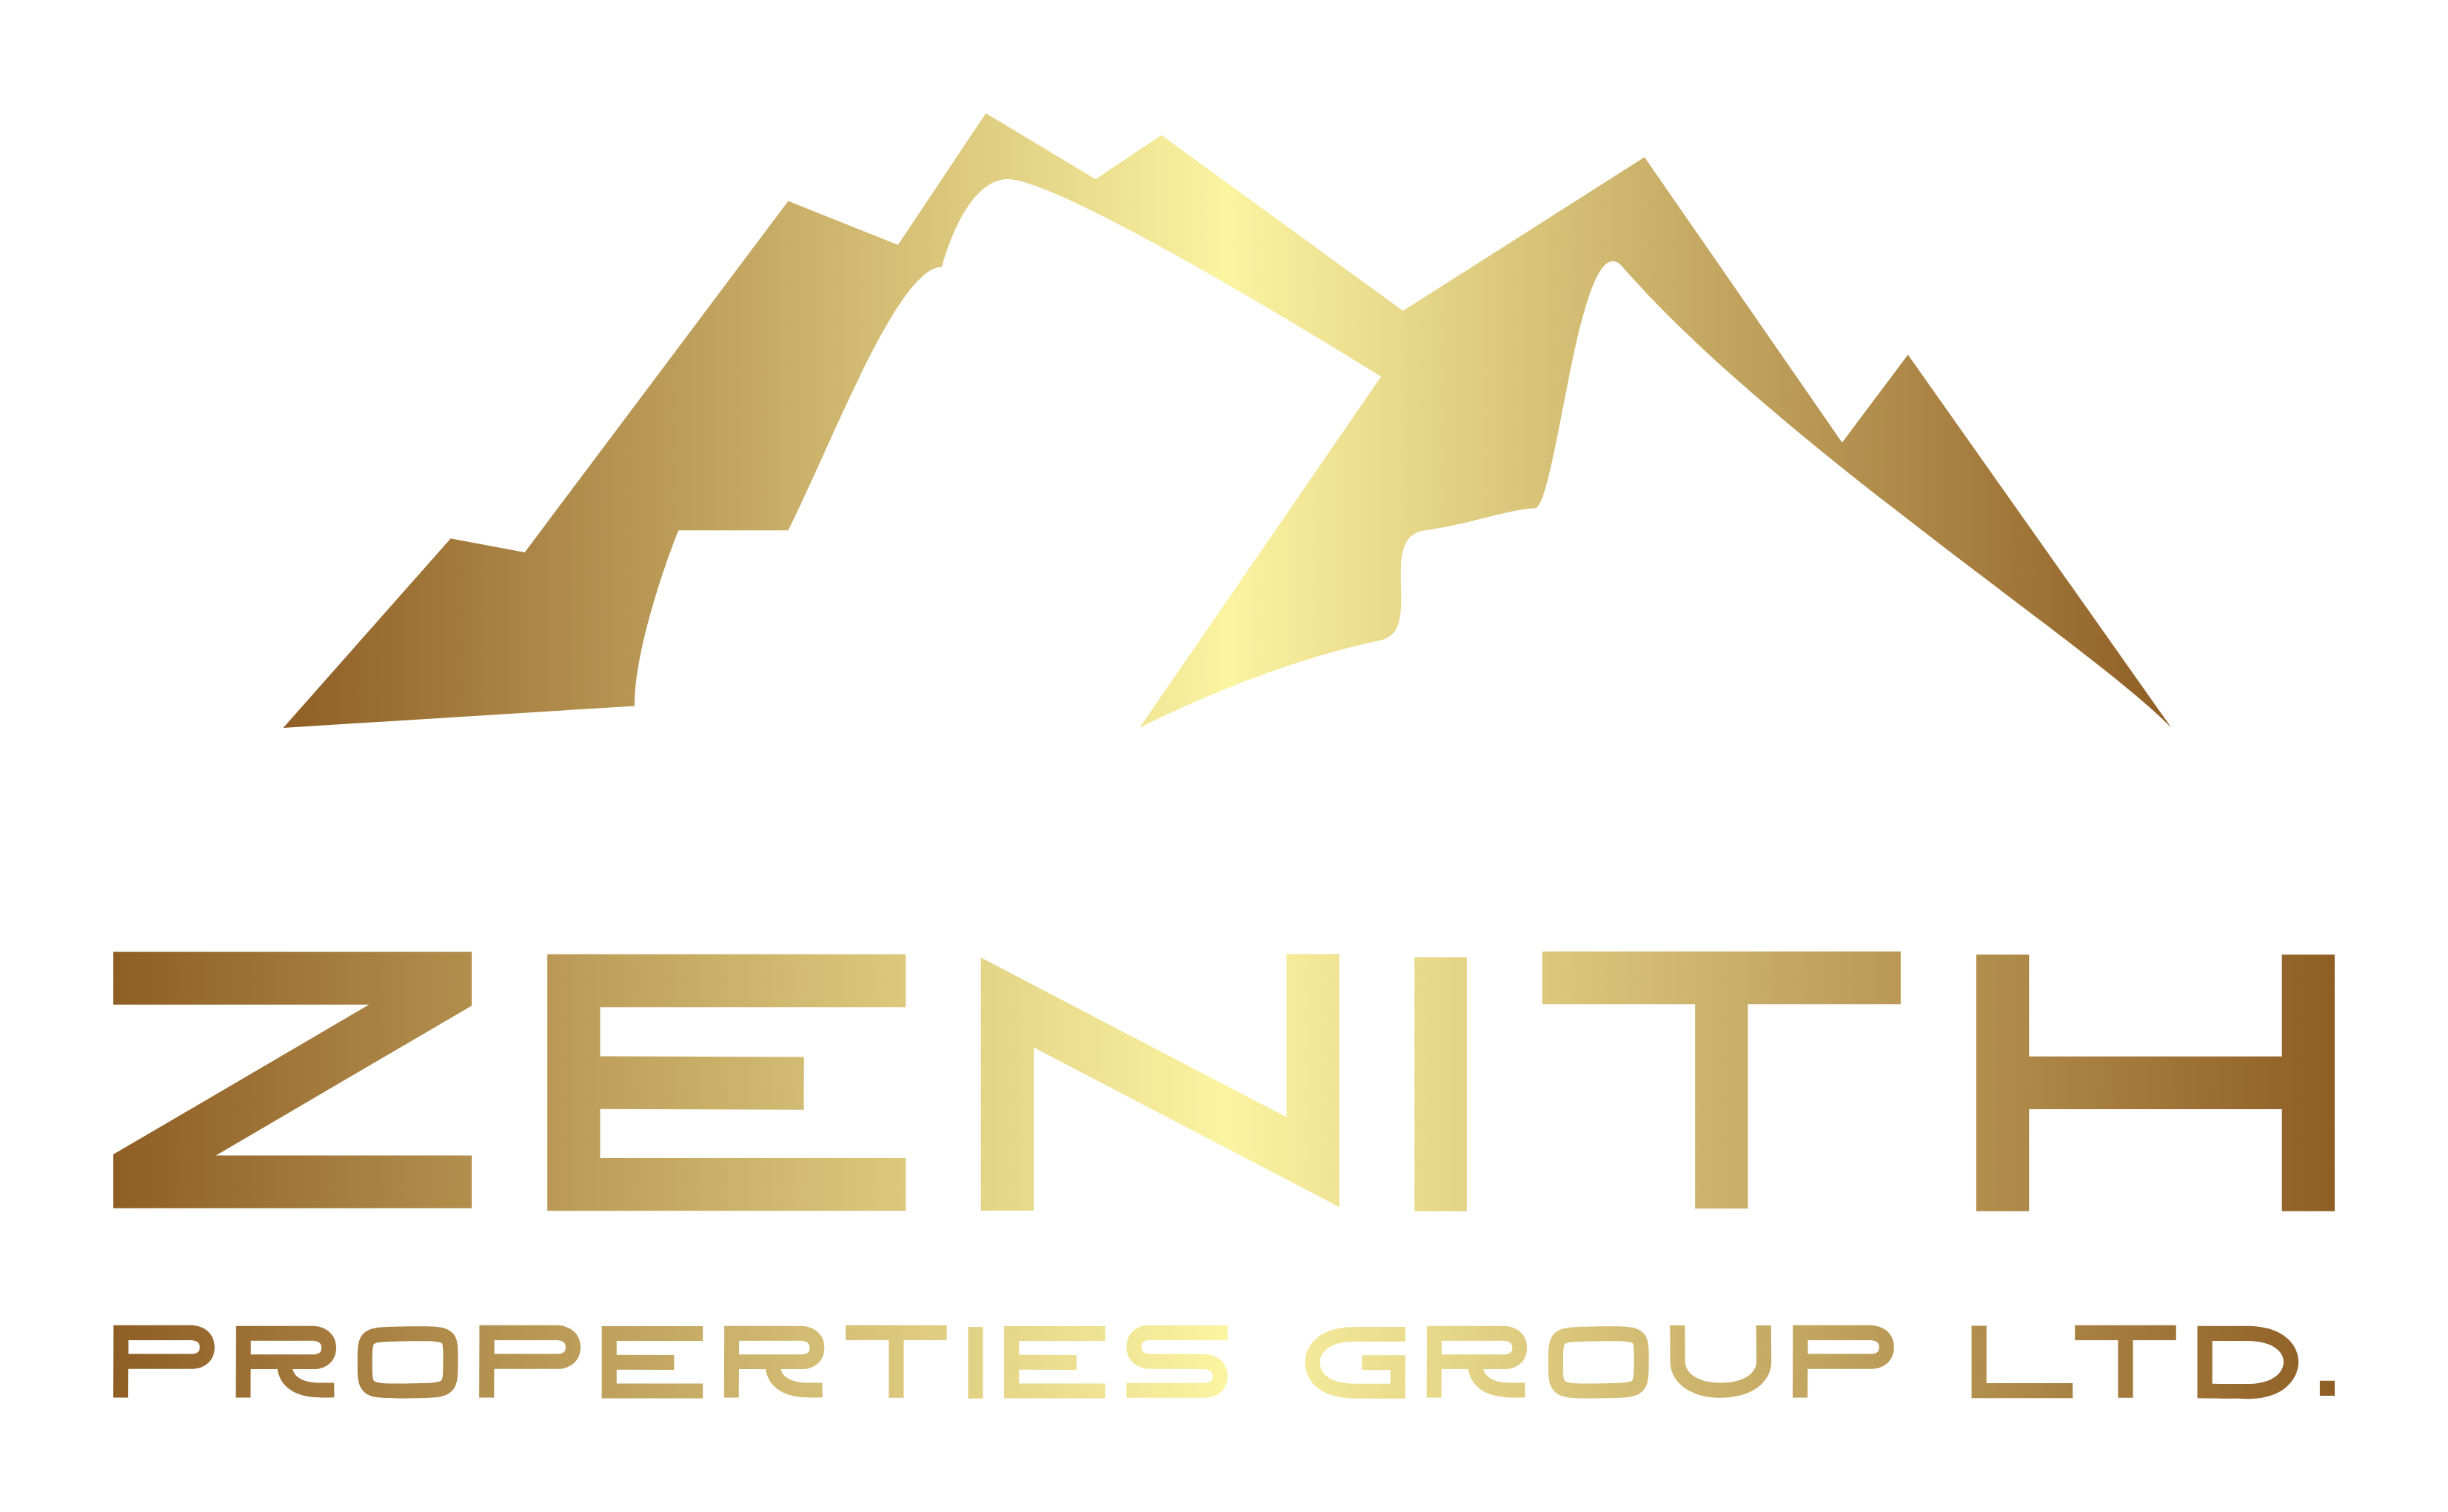 Zenith Properties Group Ltd